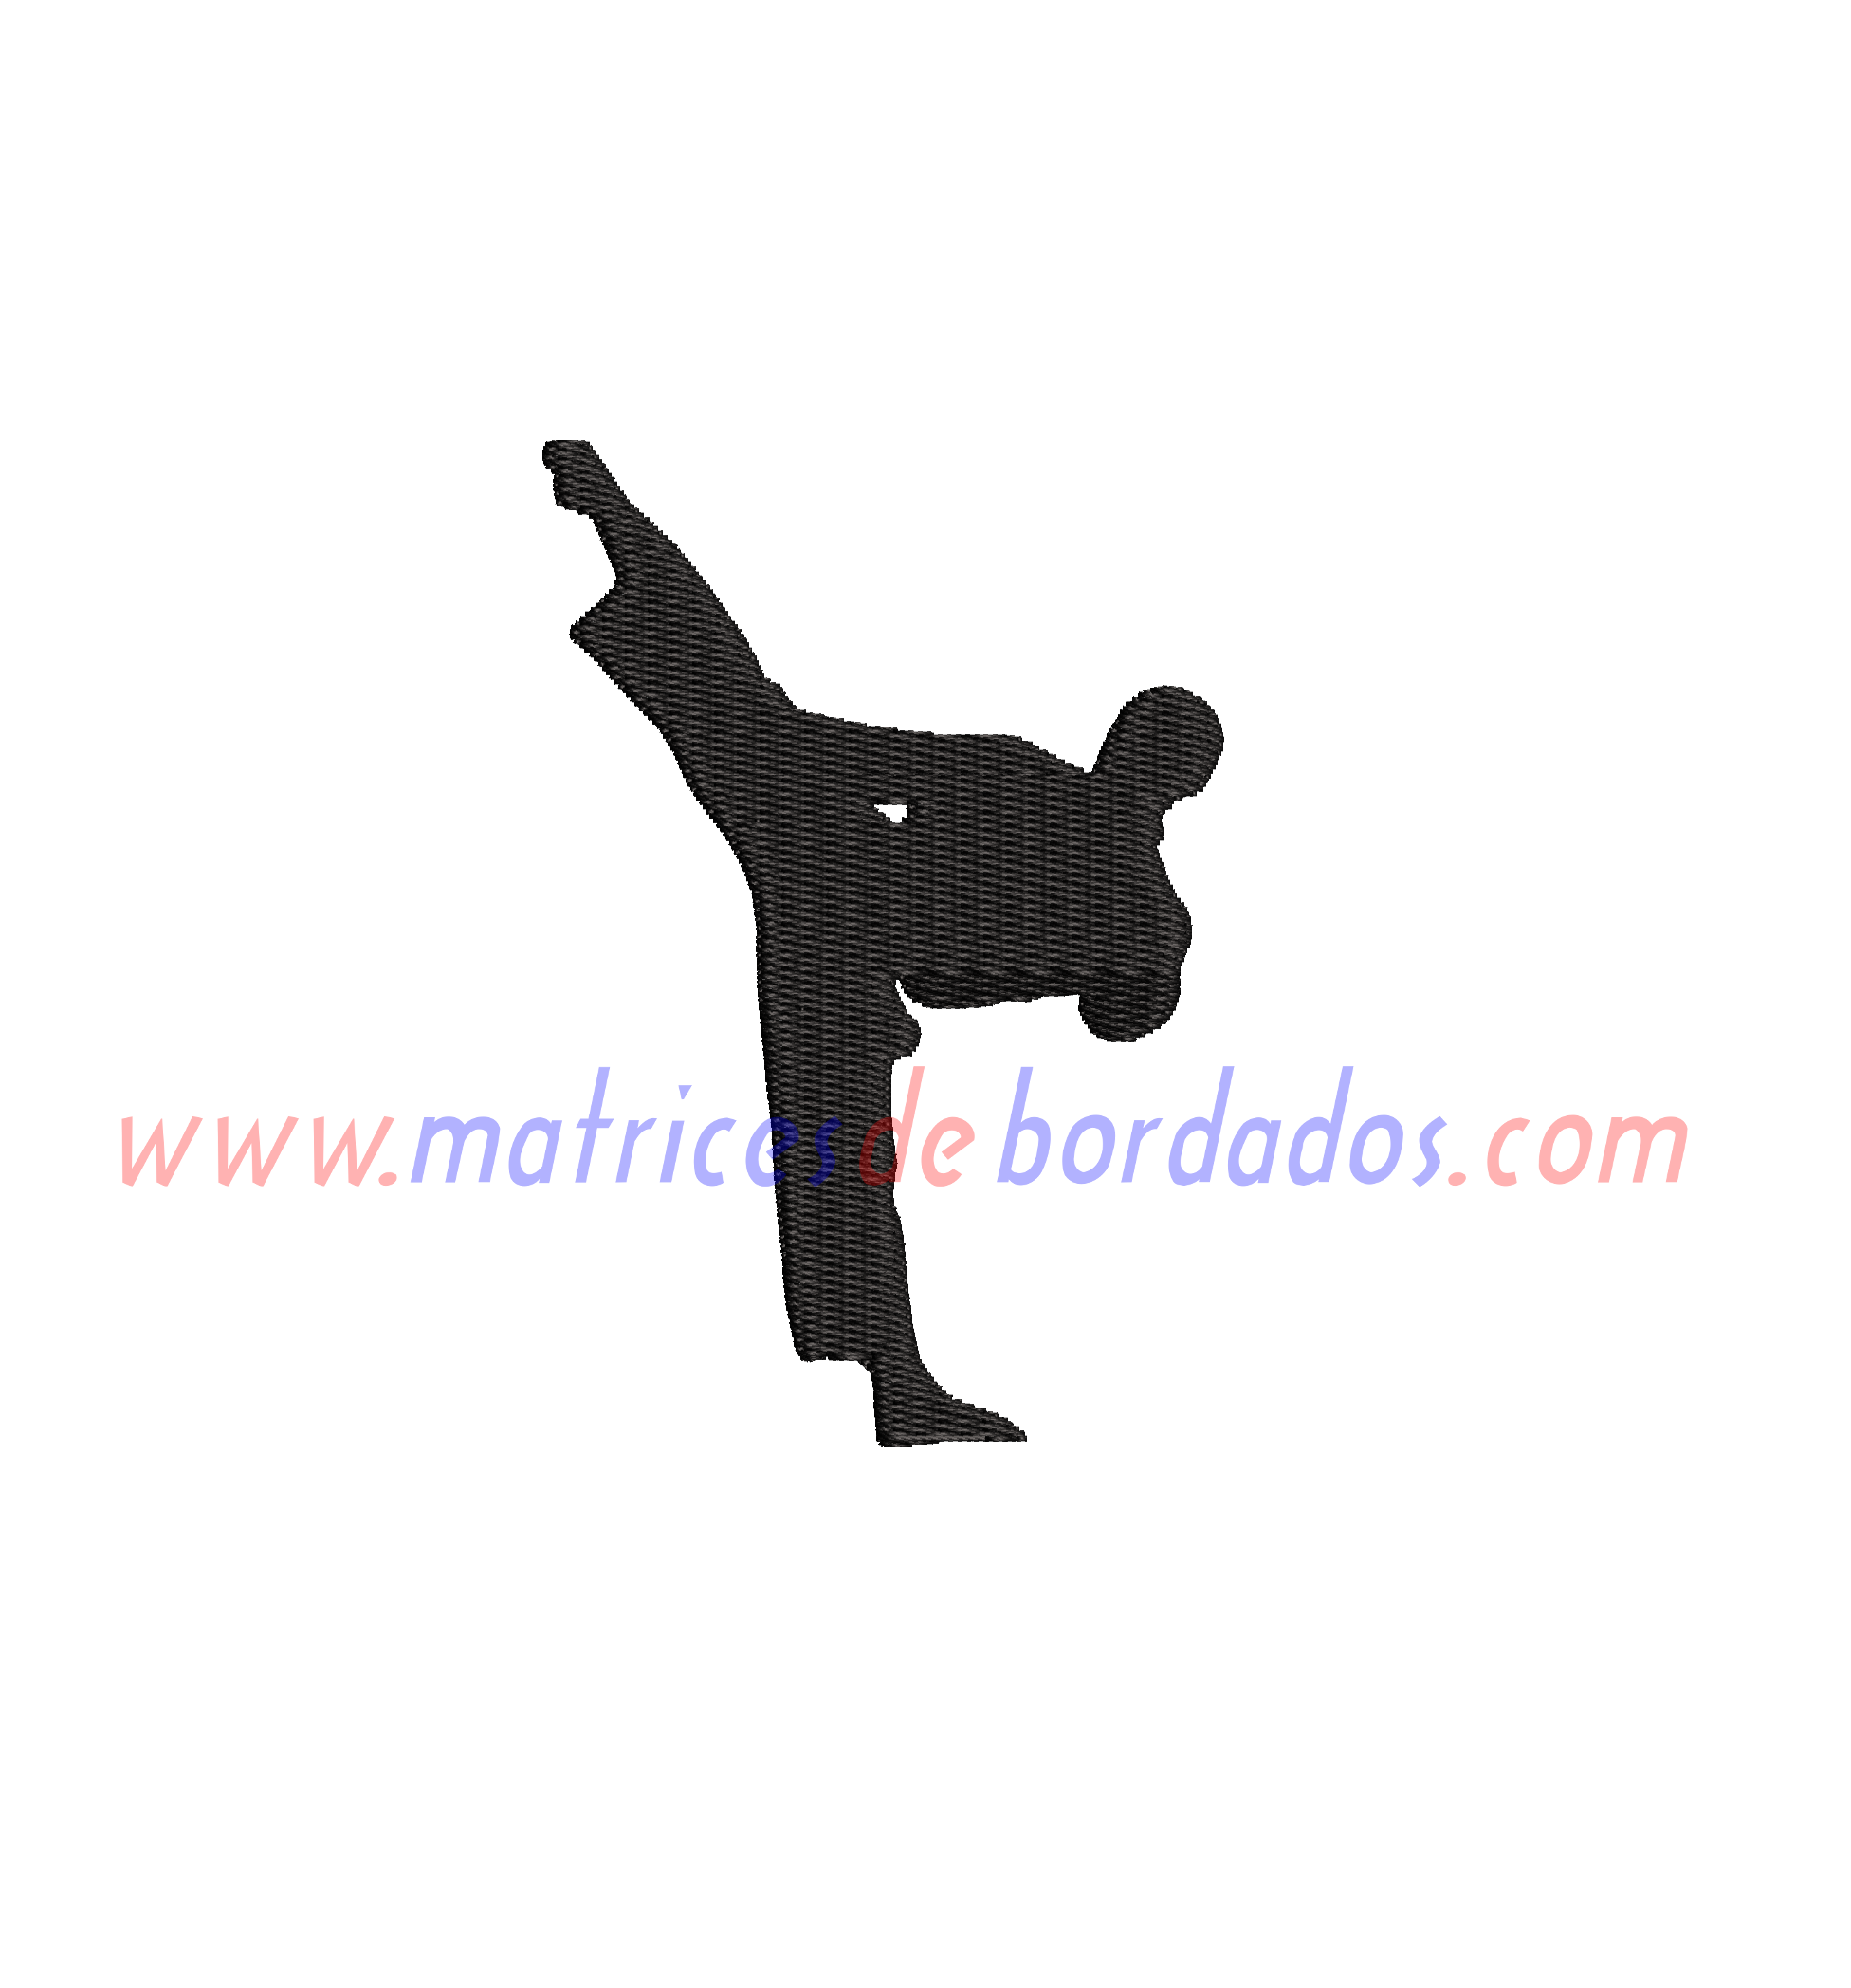 EC56DC - Taekwondo